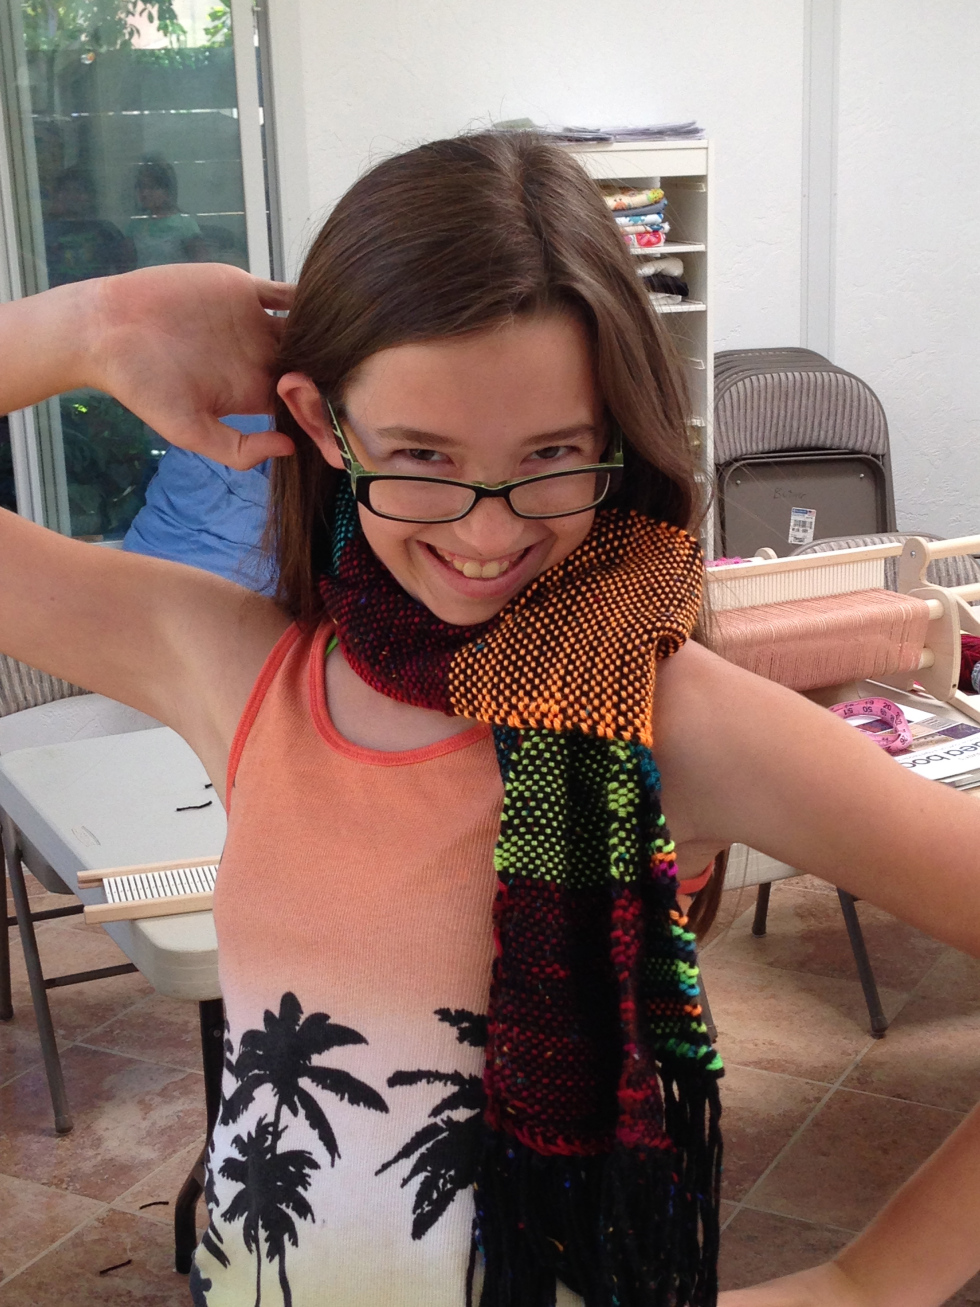  7th grader scarf   